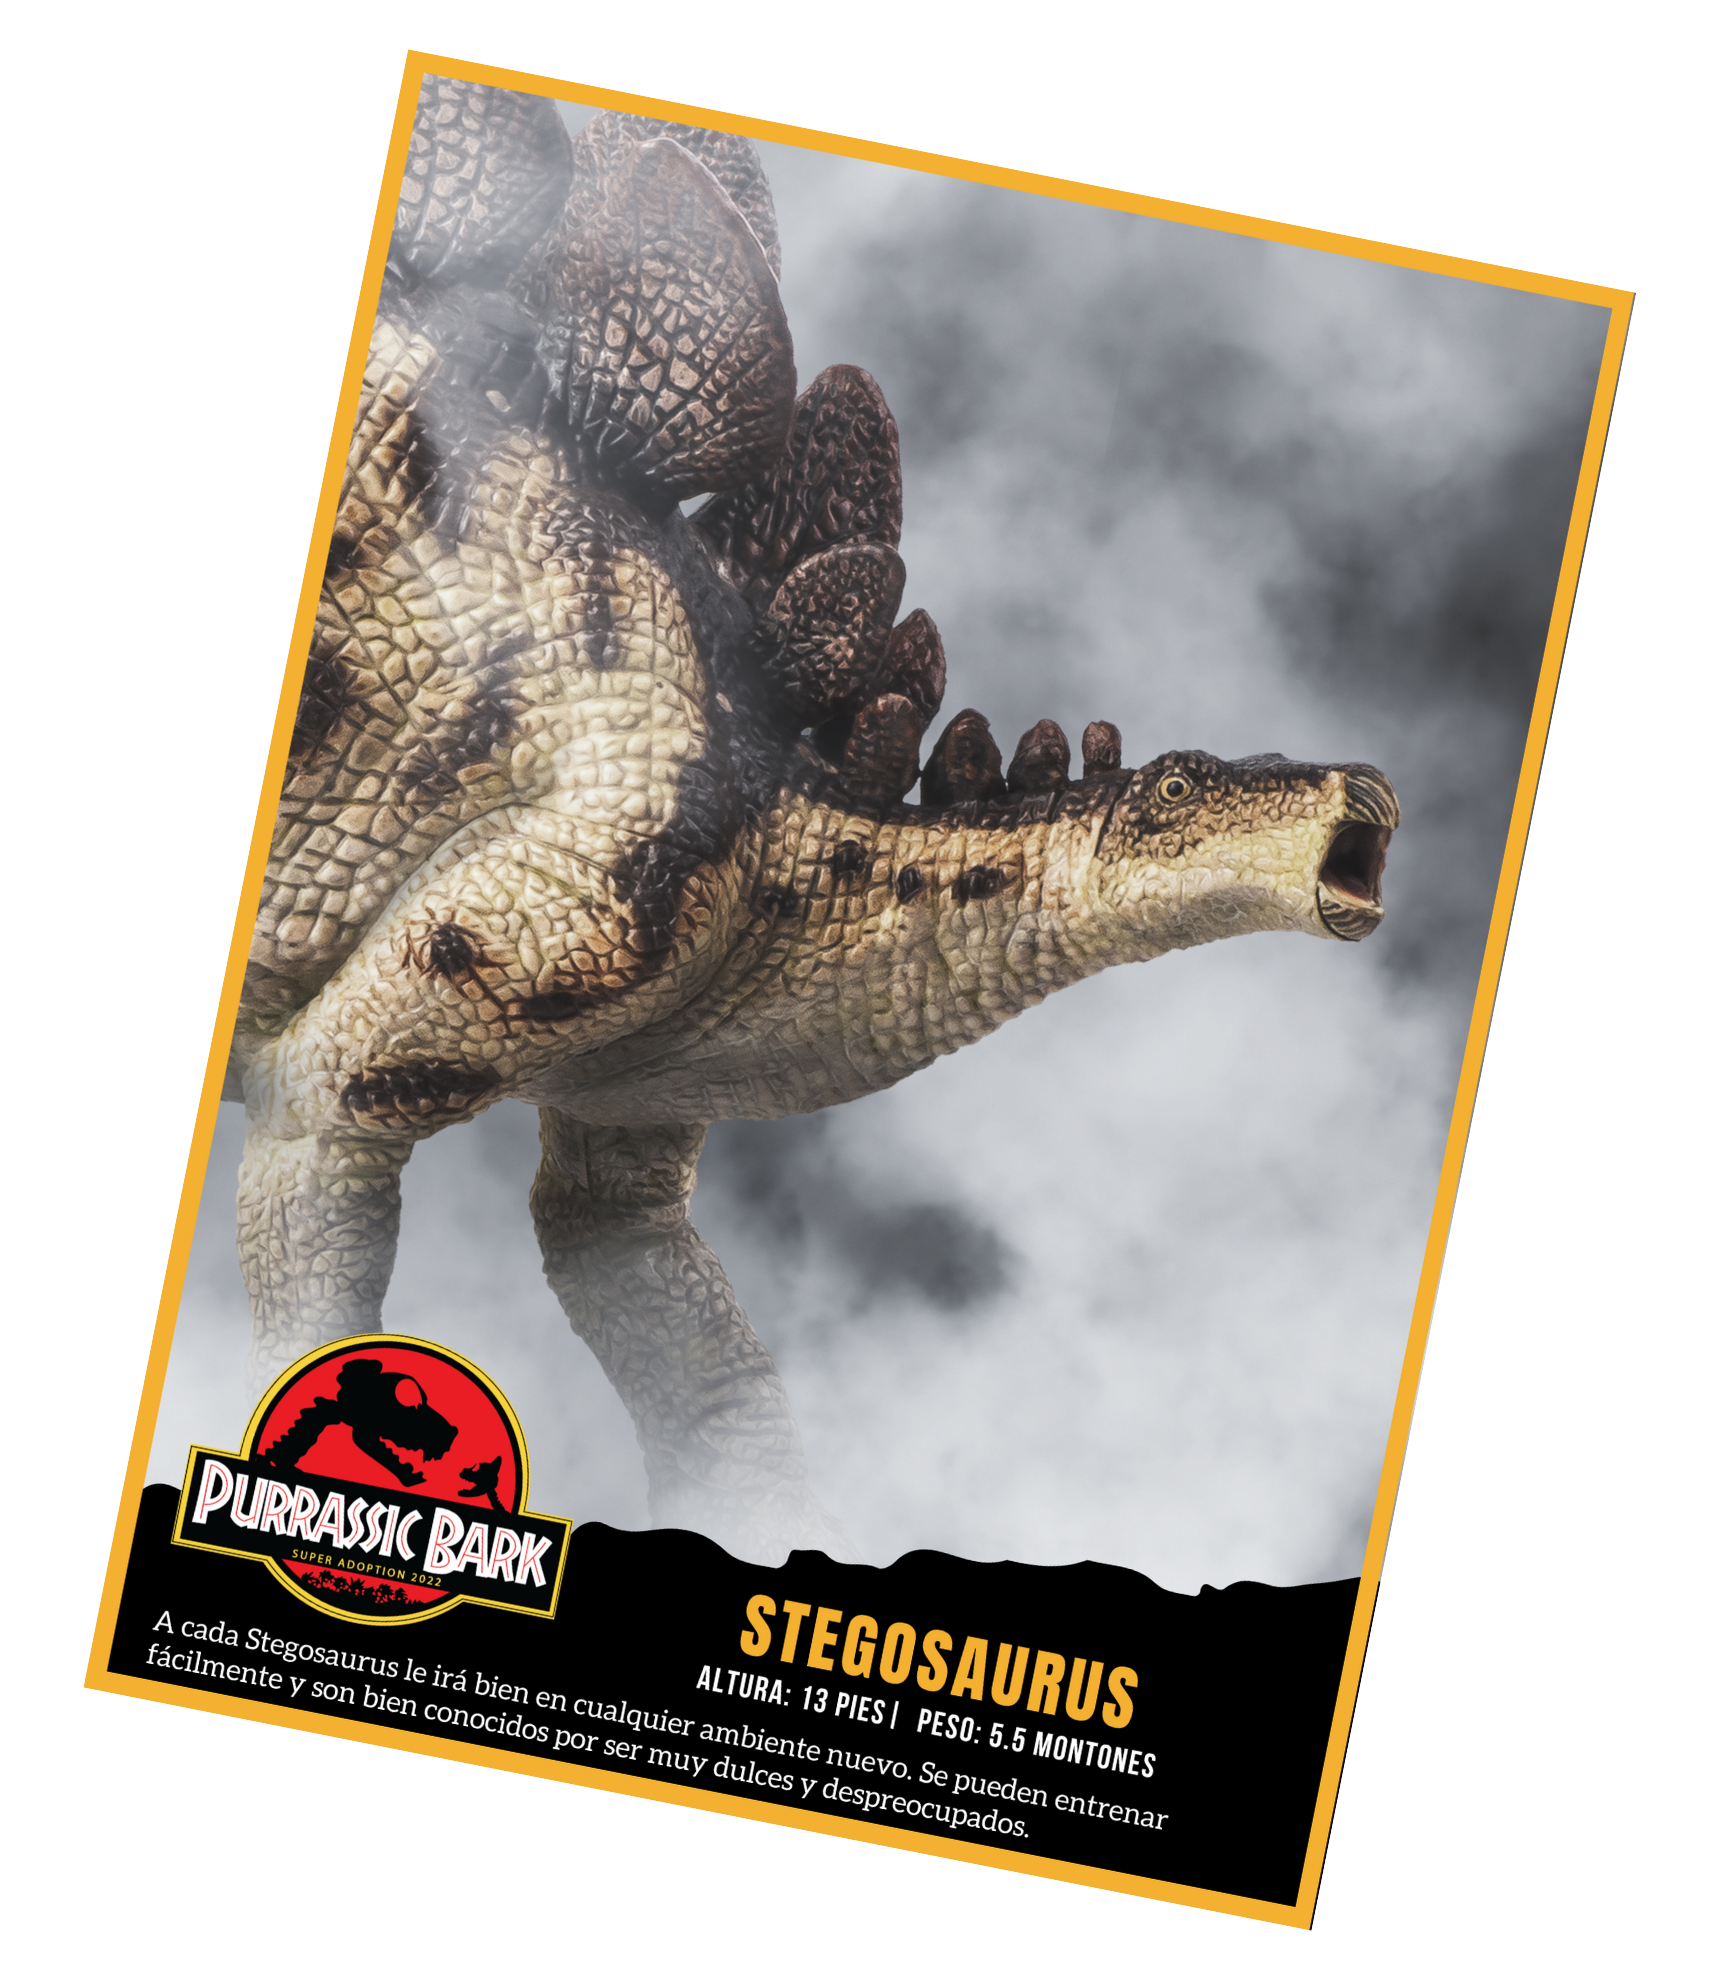 A cada Stegosaurus le ira bien en cualquier ambiente nuevo. Se pueden entrenar facilmente y son bien conocidos por ser muy dulces y despreocupados.